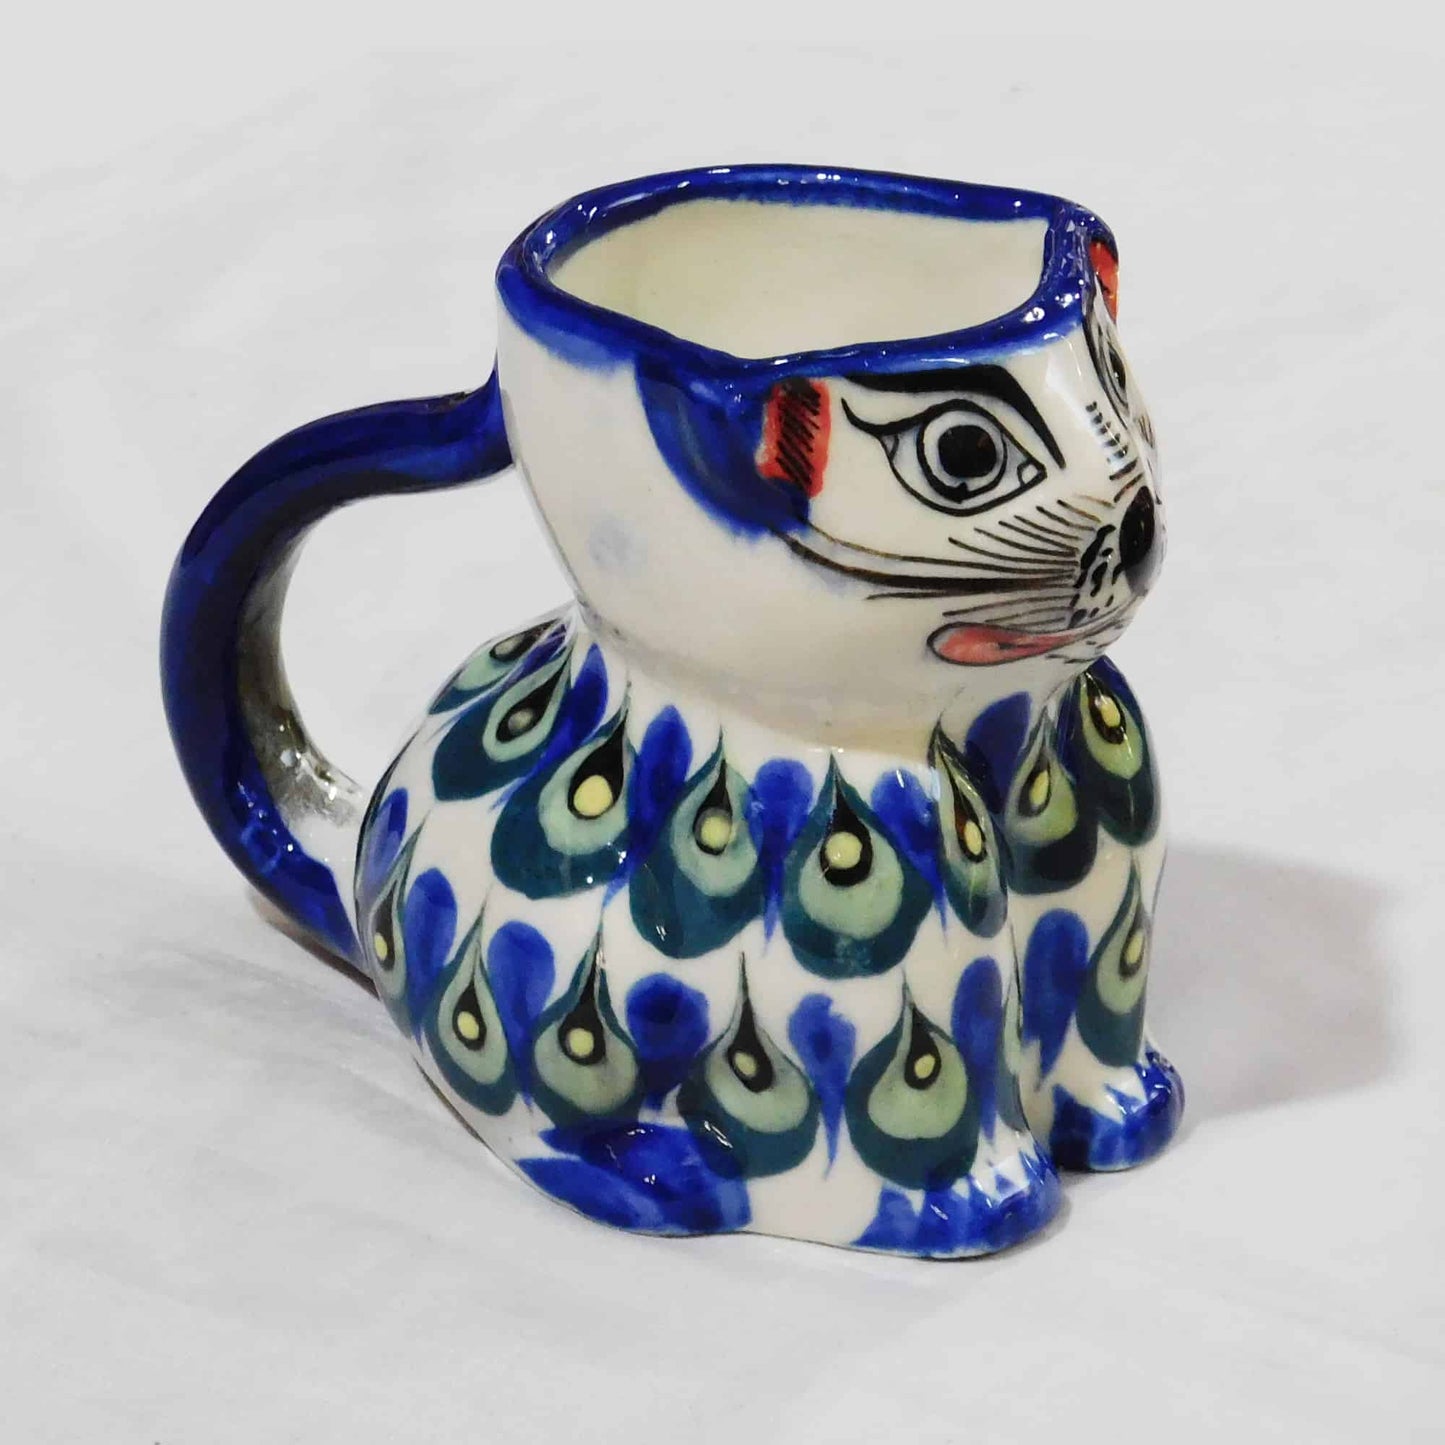 Taza de cerámica diseño gato - variedad de colores